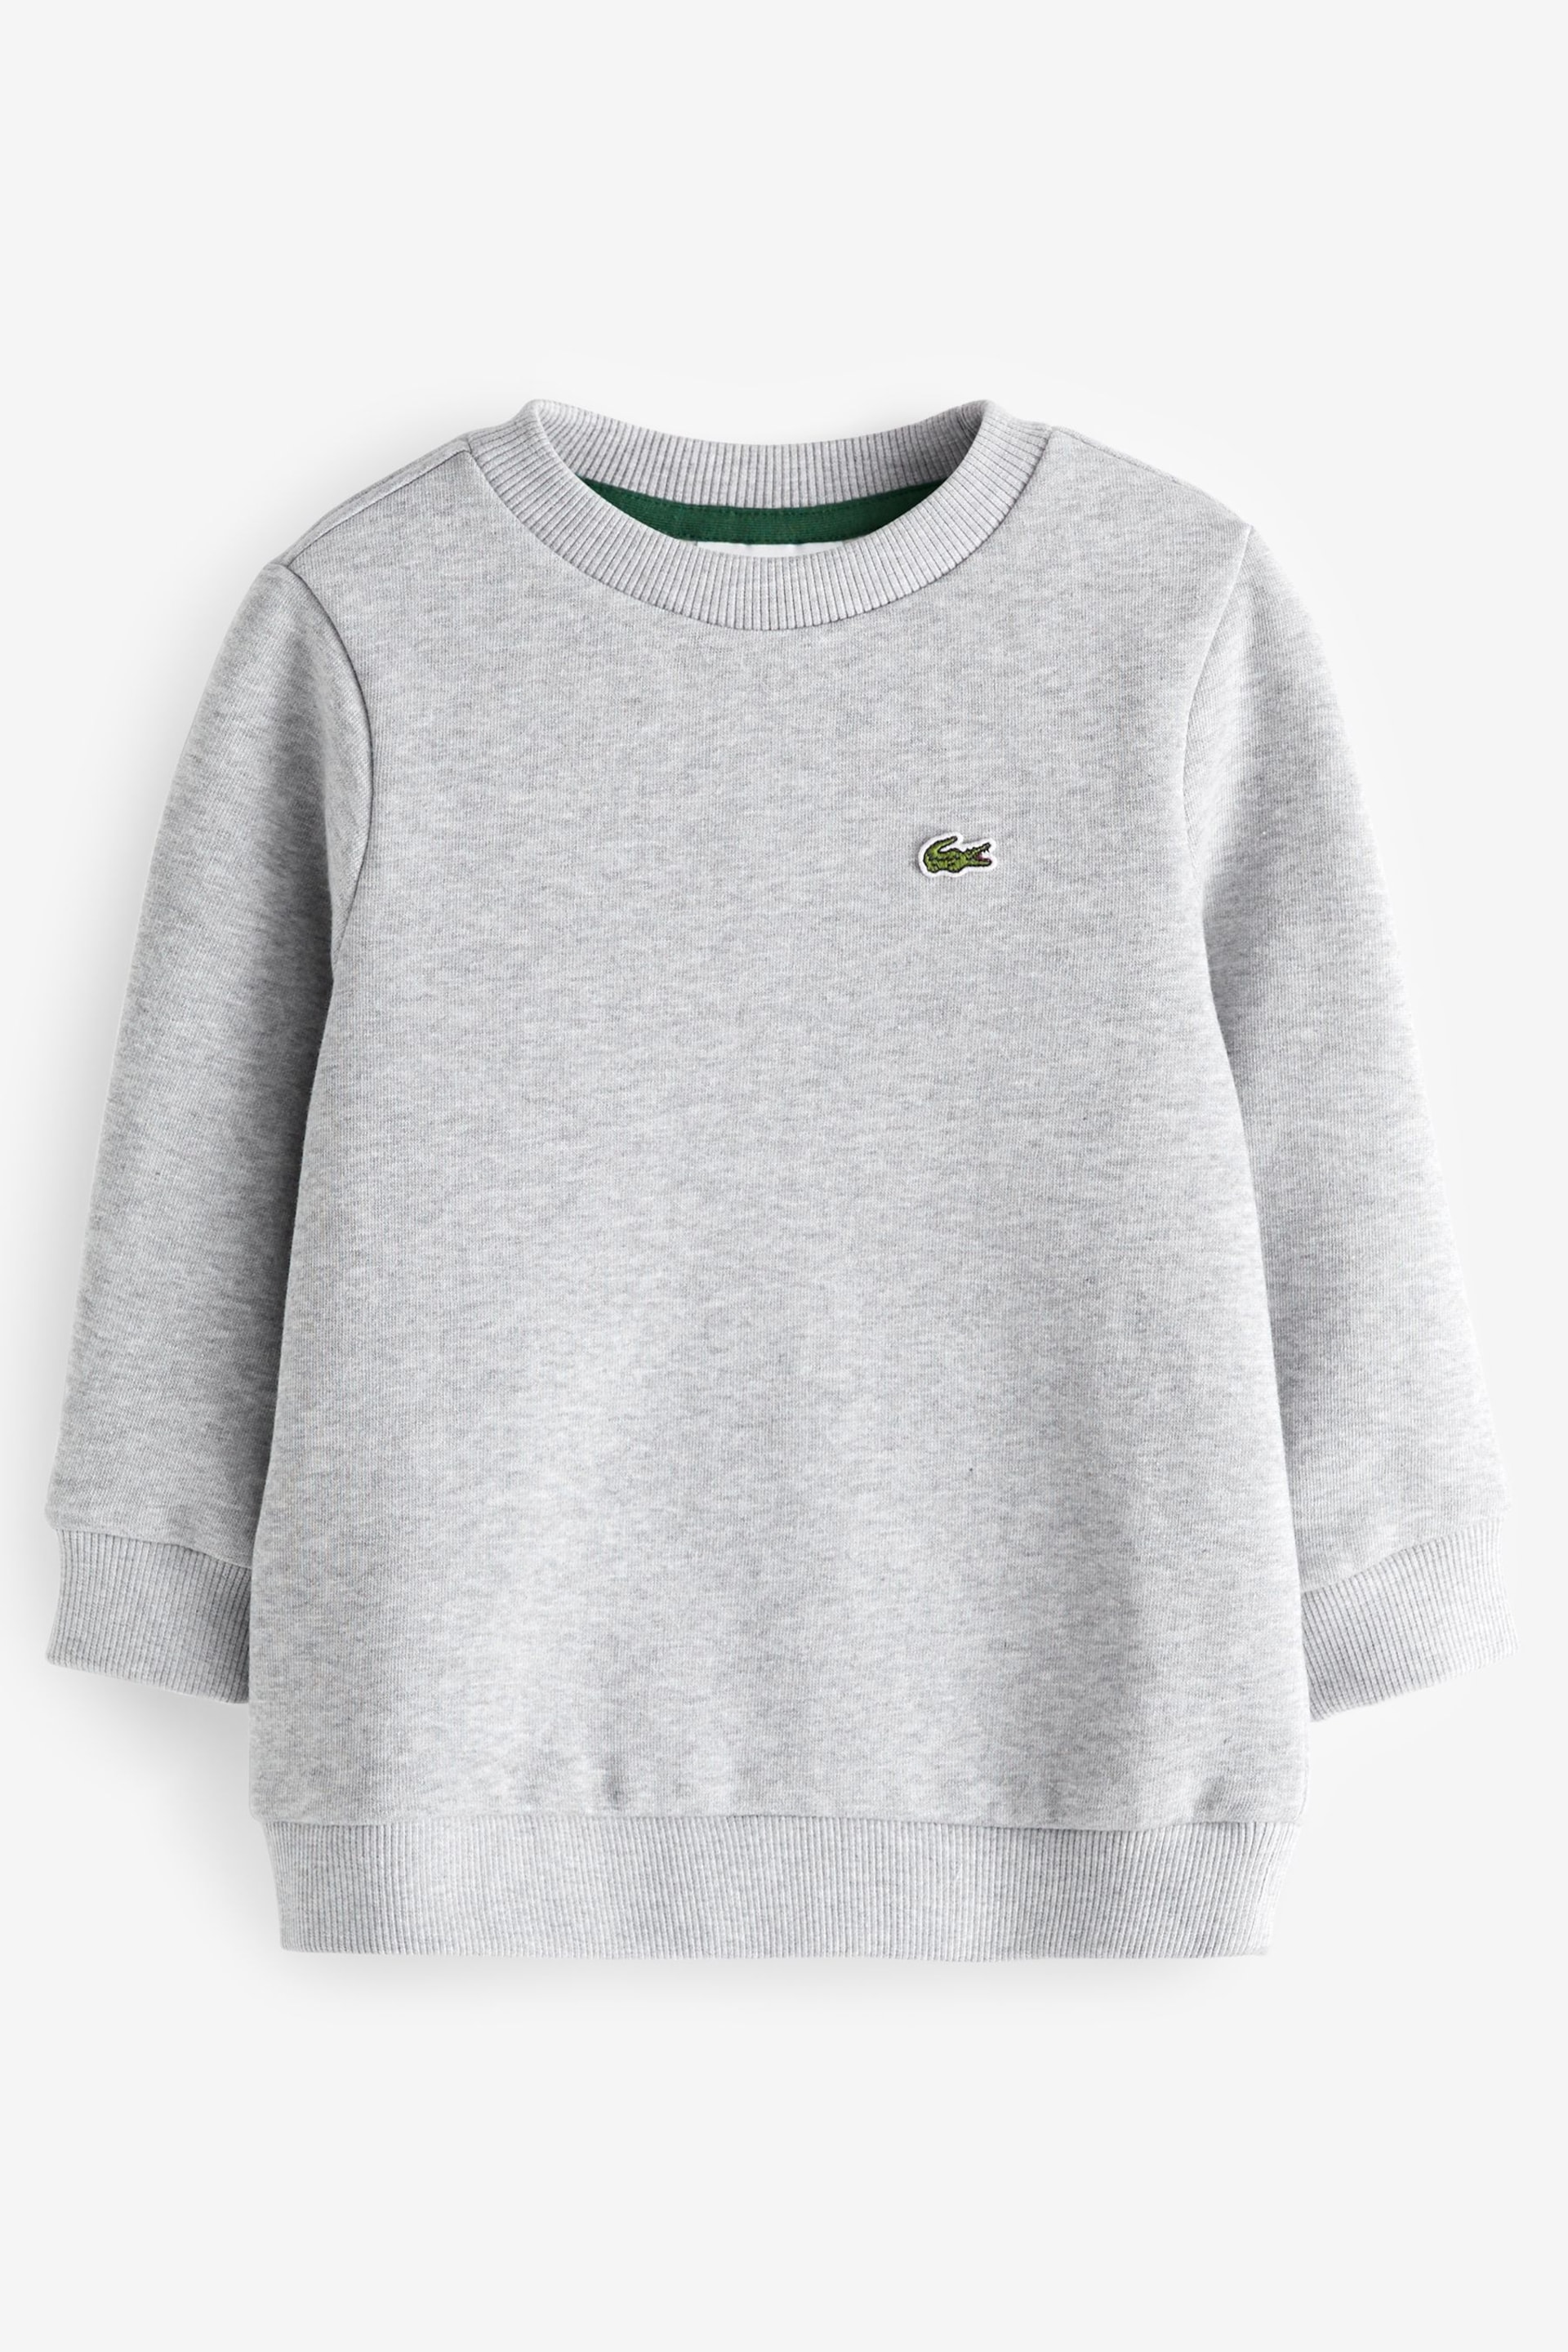 Lacoste Children's Fleece Jersey Sweatshirt - Image 1 of 3